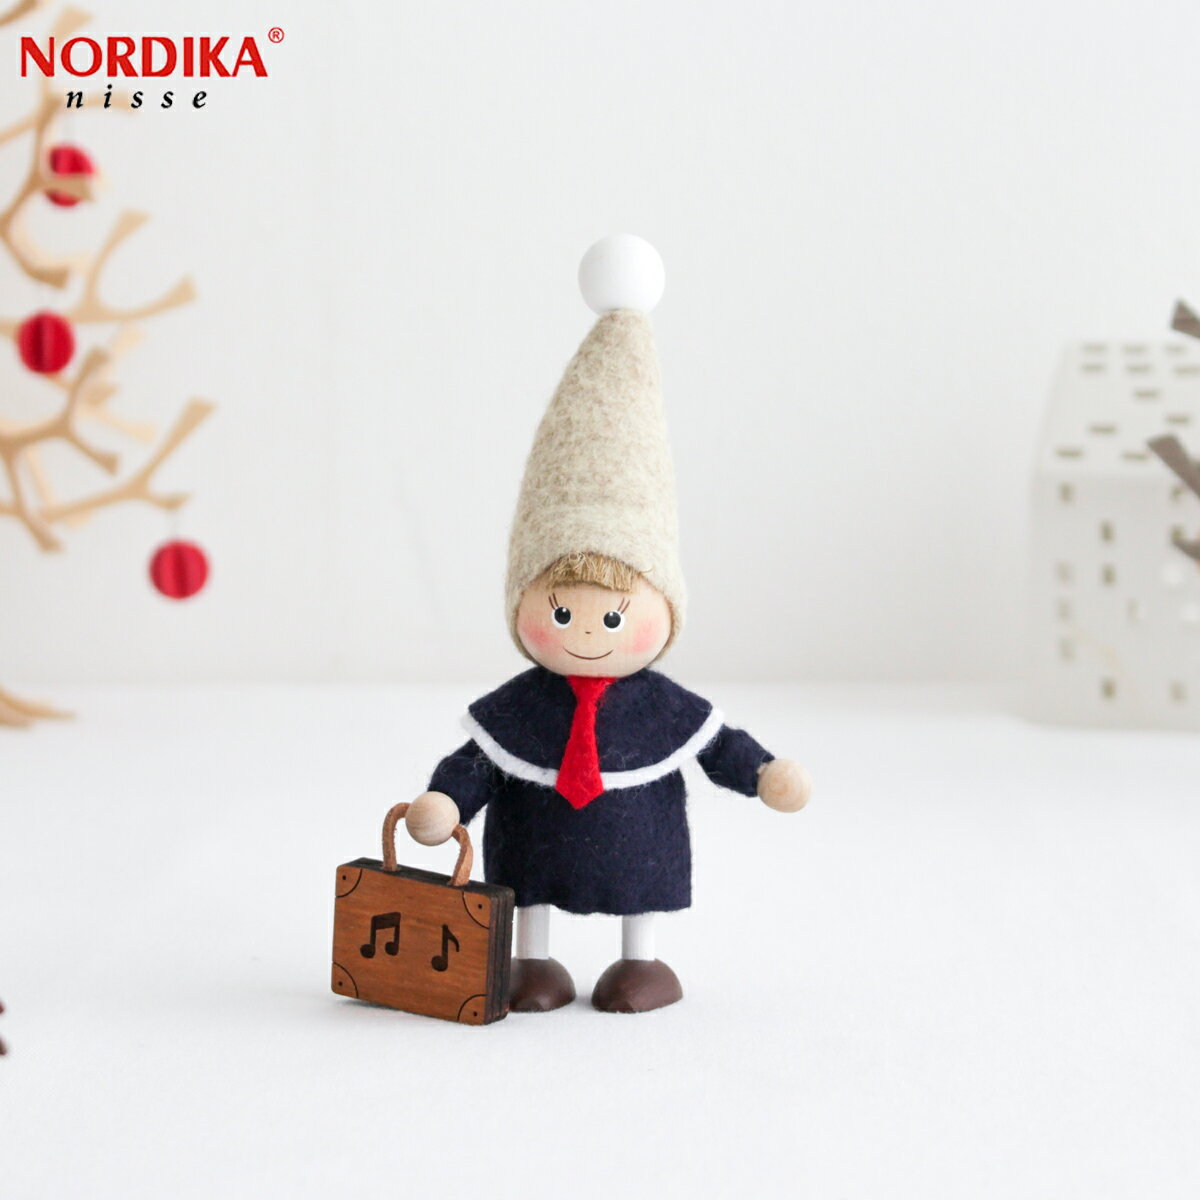 ノルディカニッセ バッグを持った男の子 ハーモニー シリーズ NORDIKA nisse クリスマス 雑貨 木製 人形 北欧 NRD120713